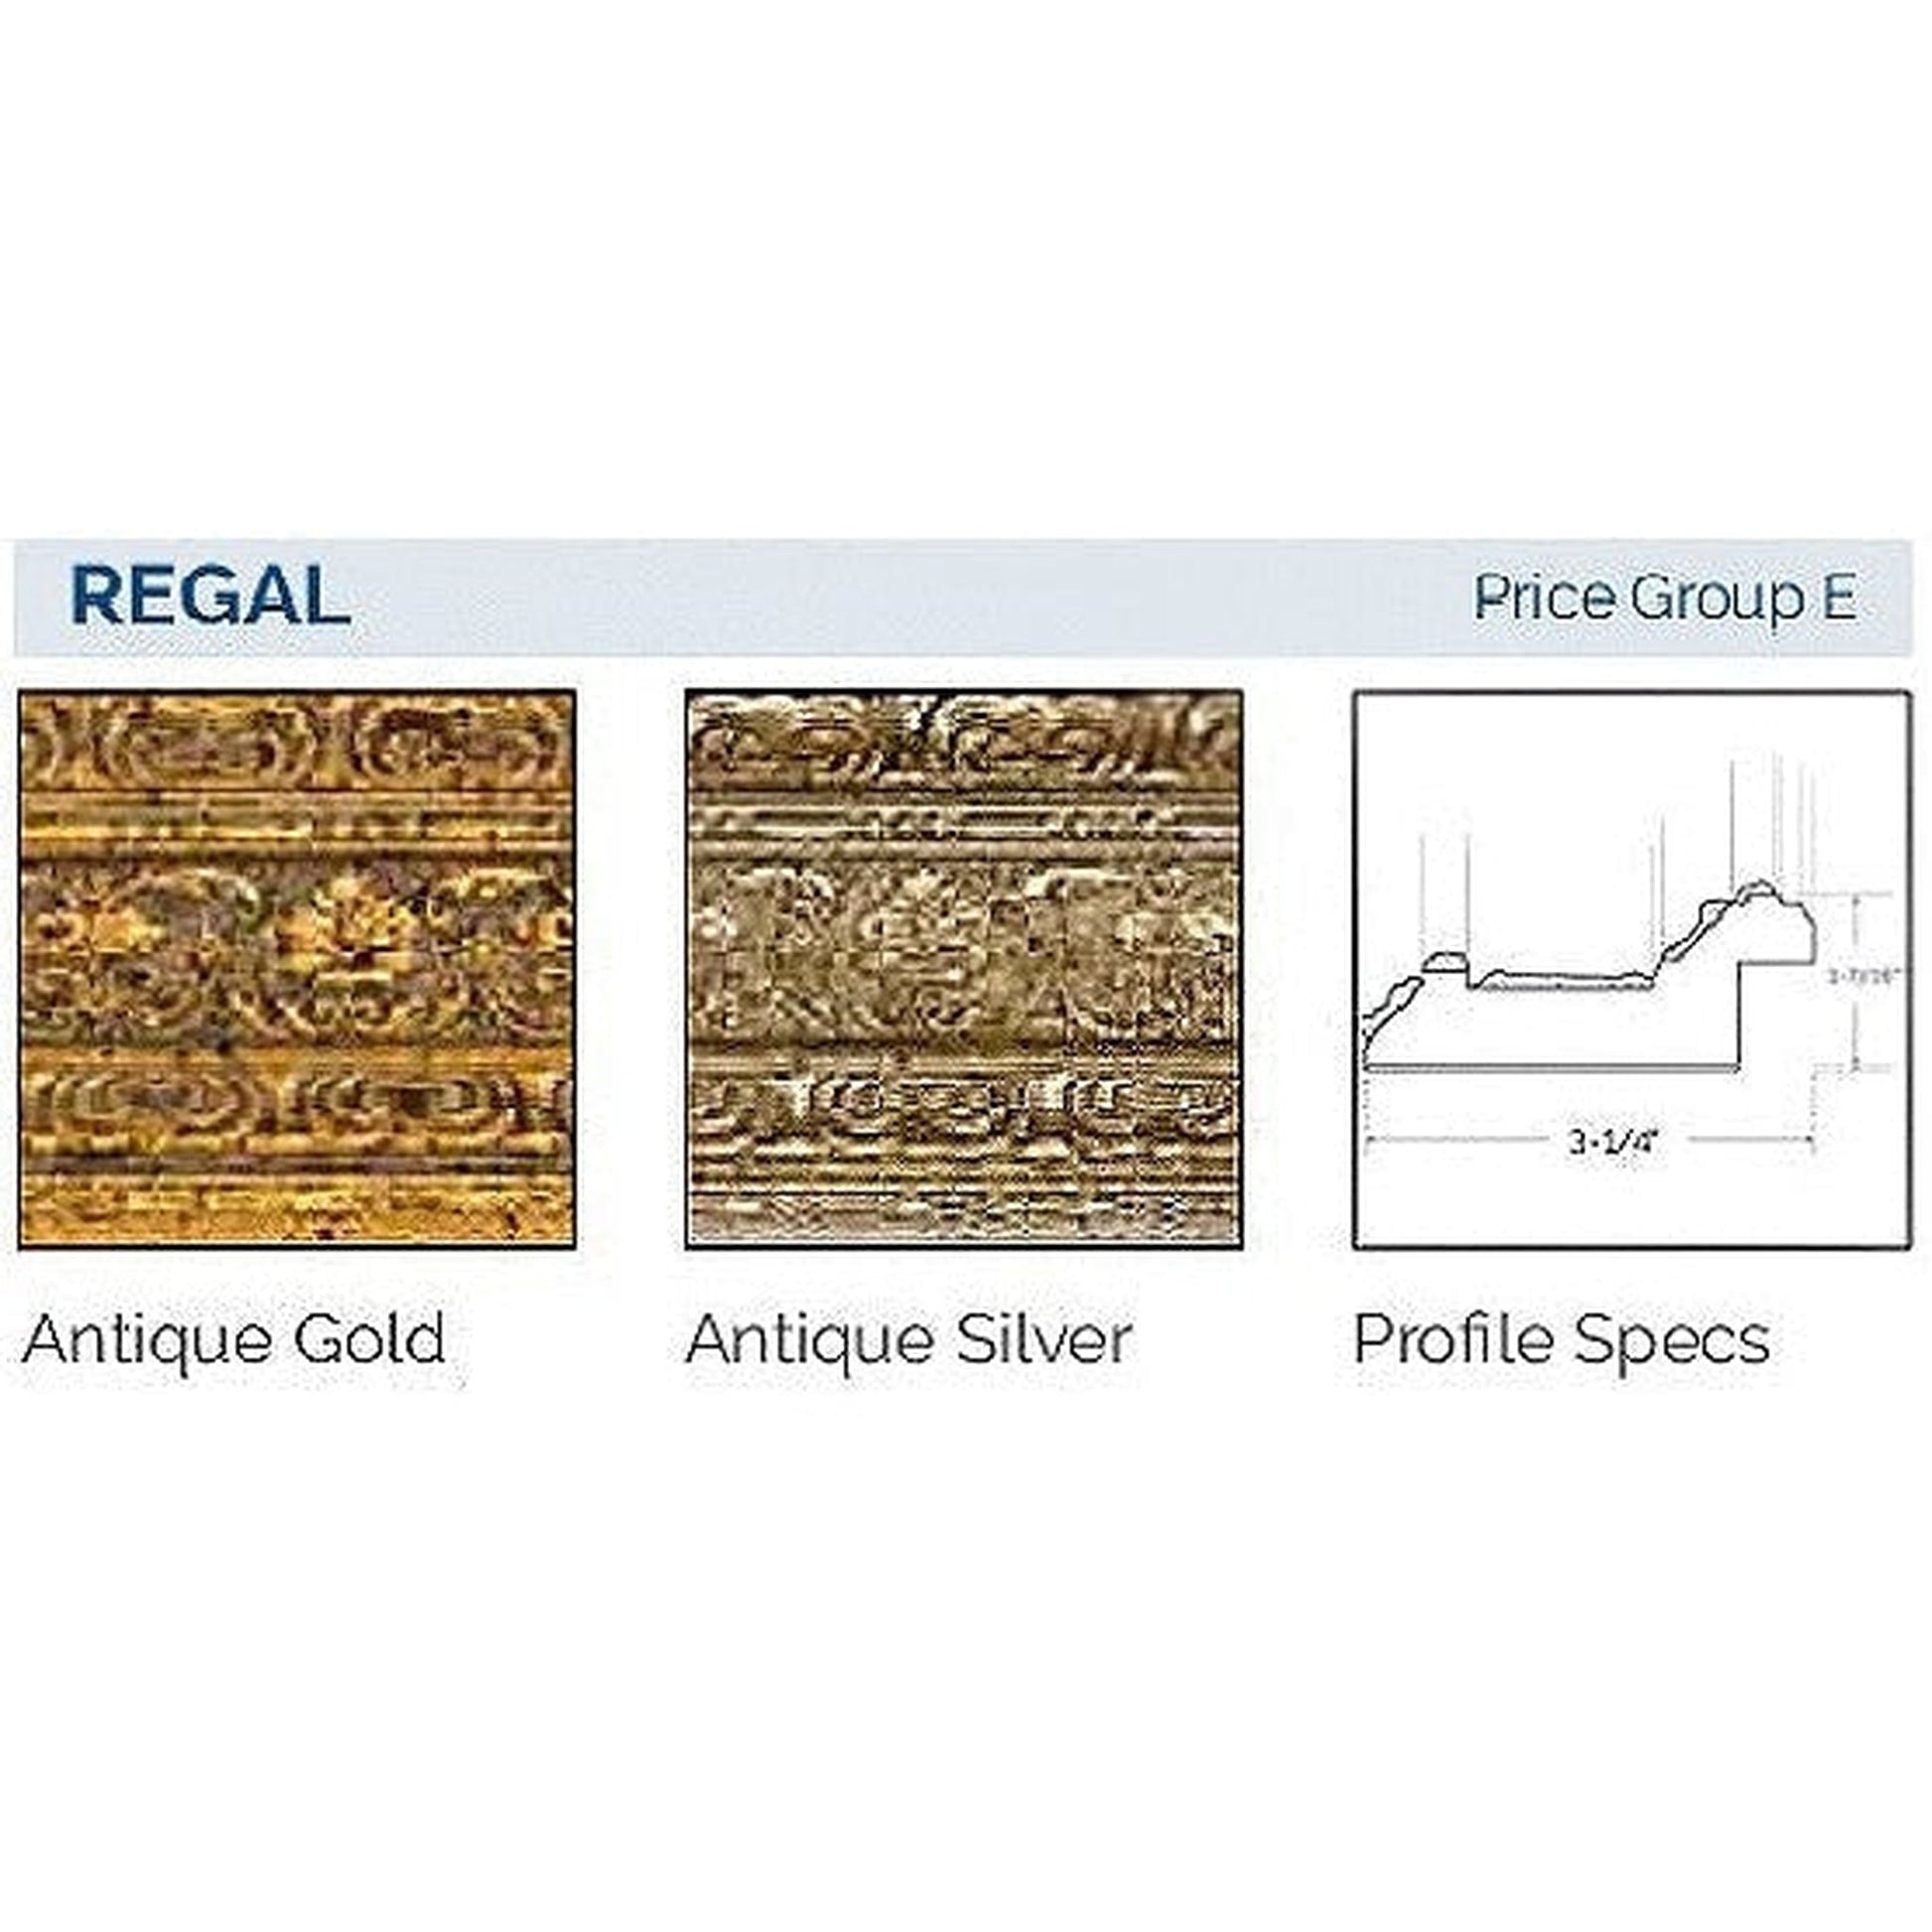 Afina Signature 44" x 30" Regal Antique Gold Recessed Triple Door Medicine Cabinet With Beveled Edge Mirror